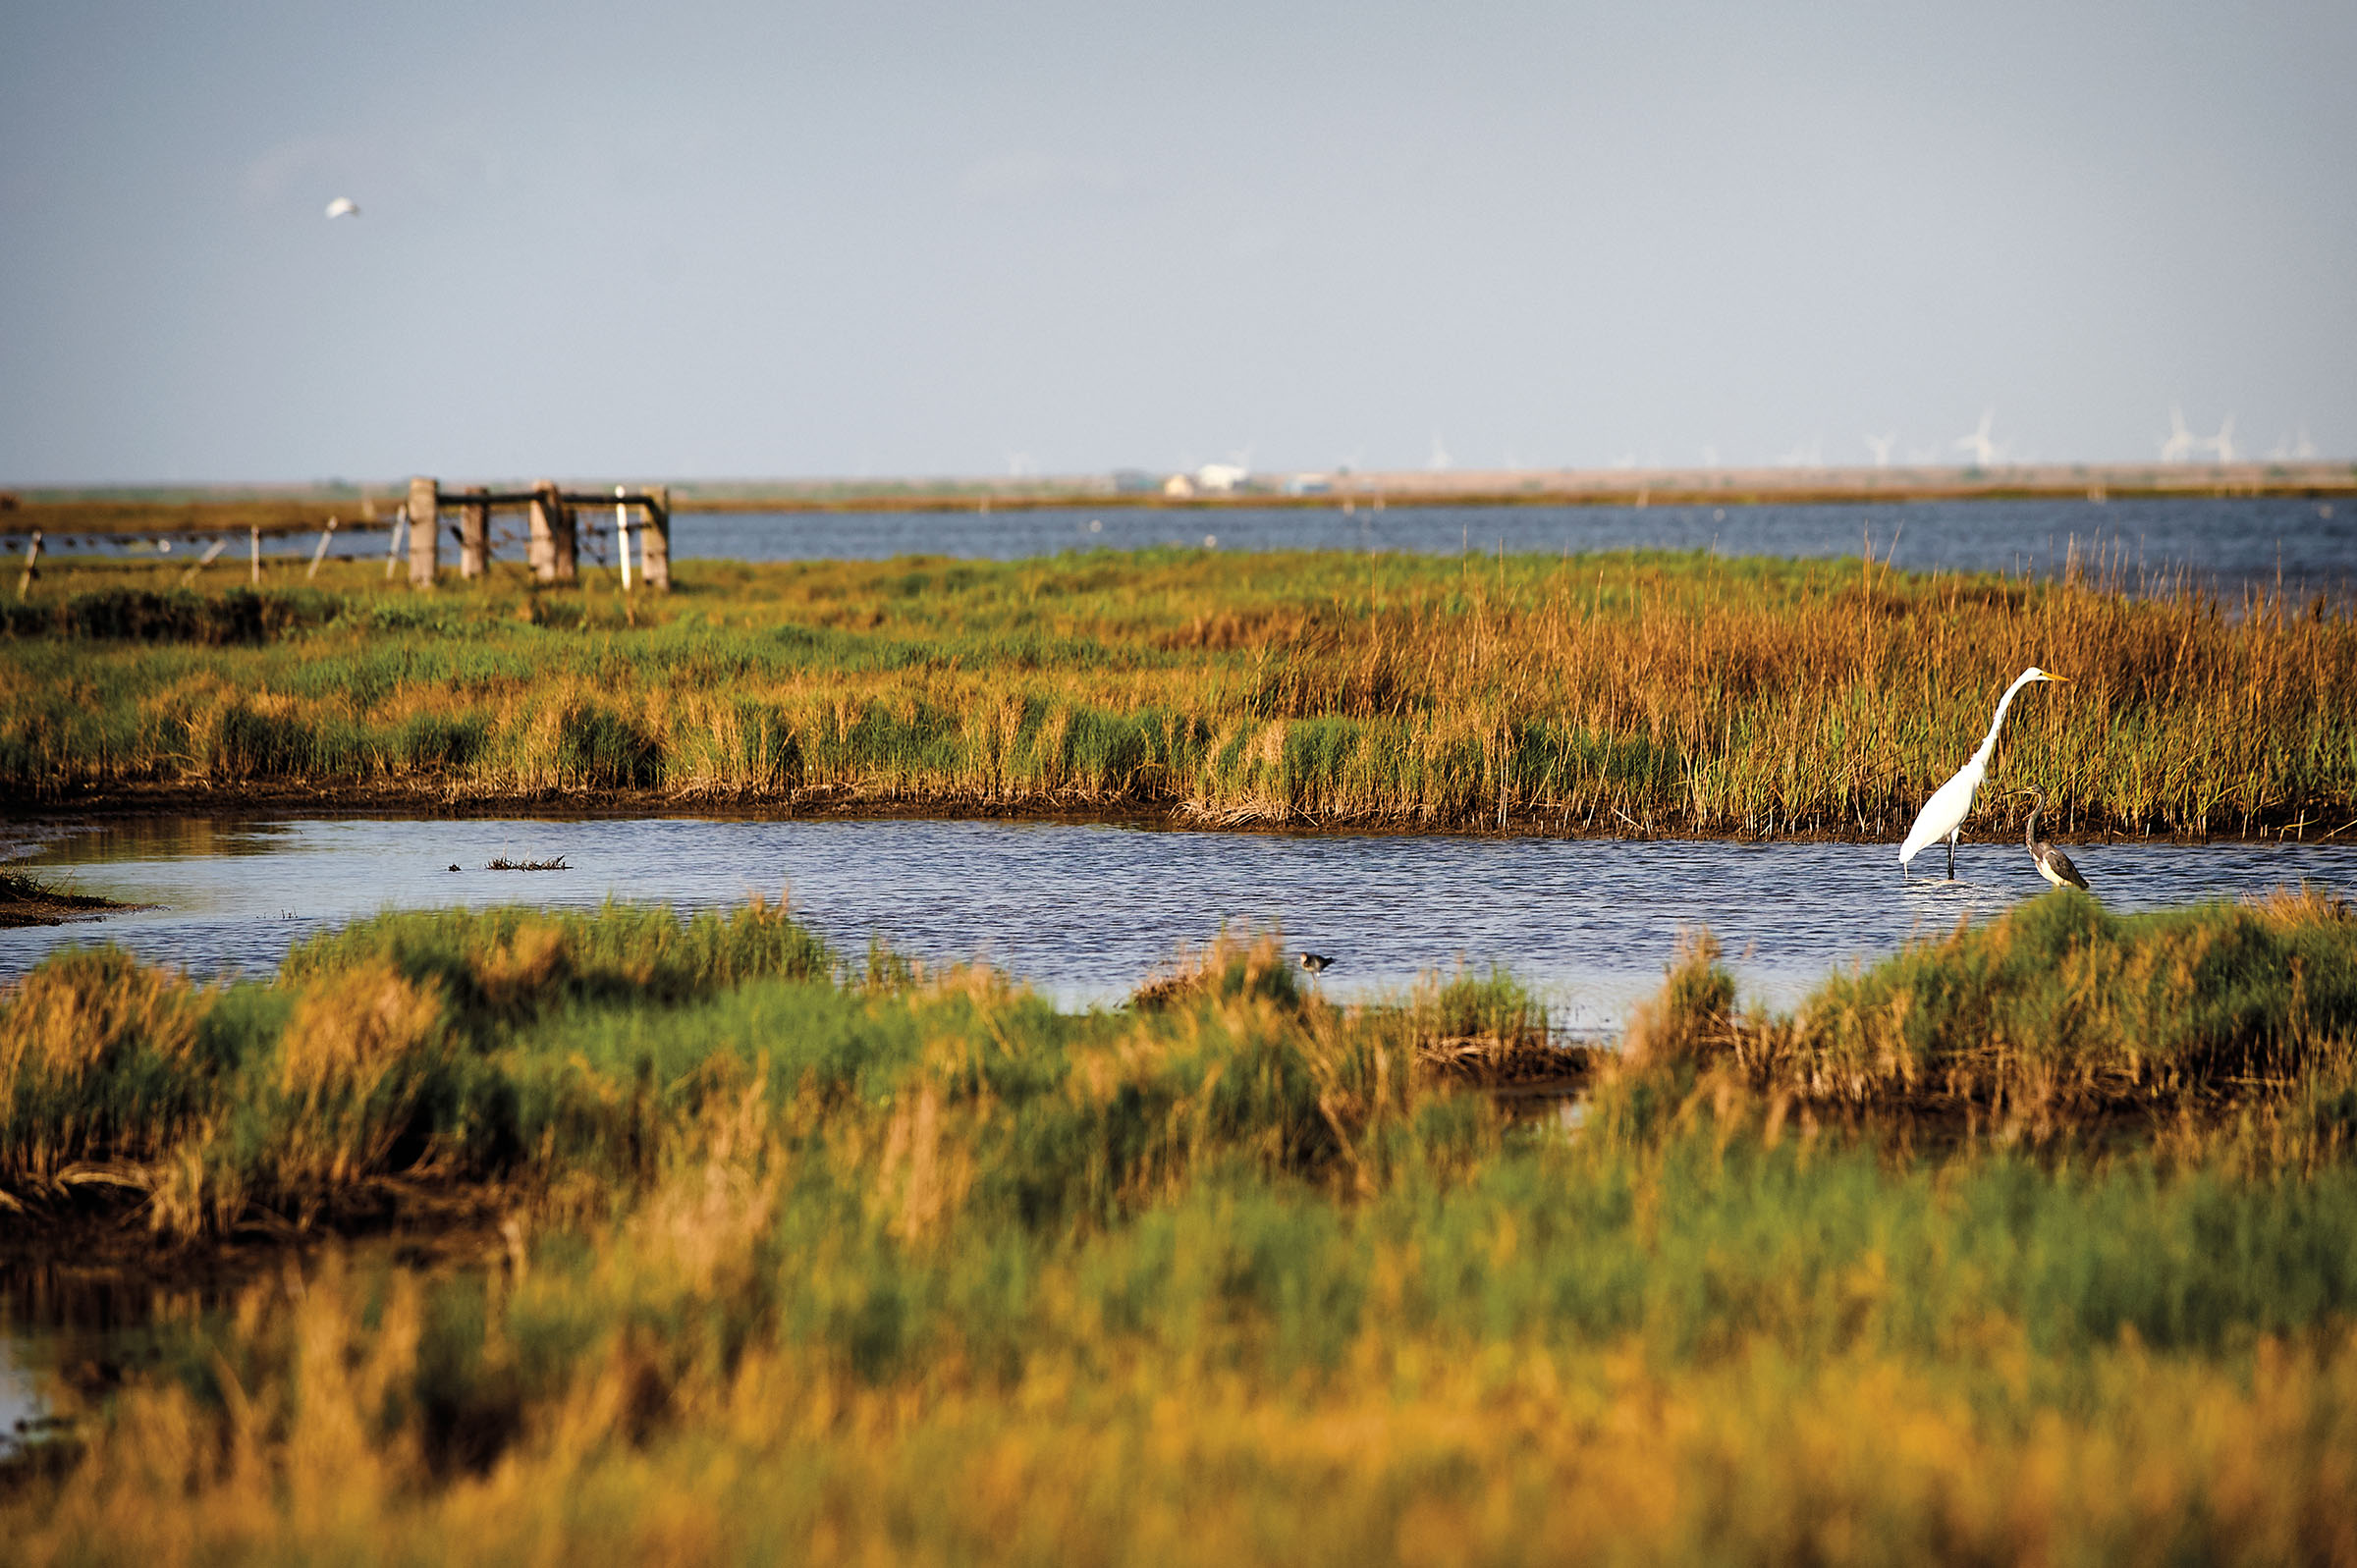 A white bird wades through the marsh